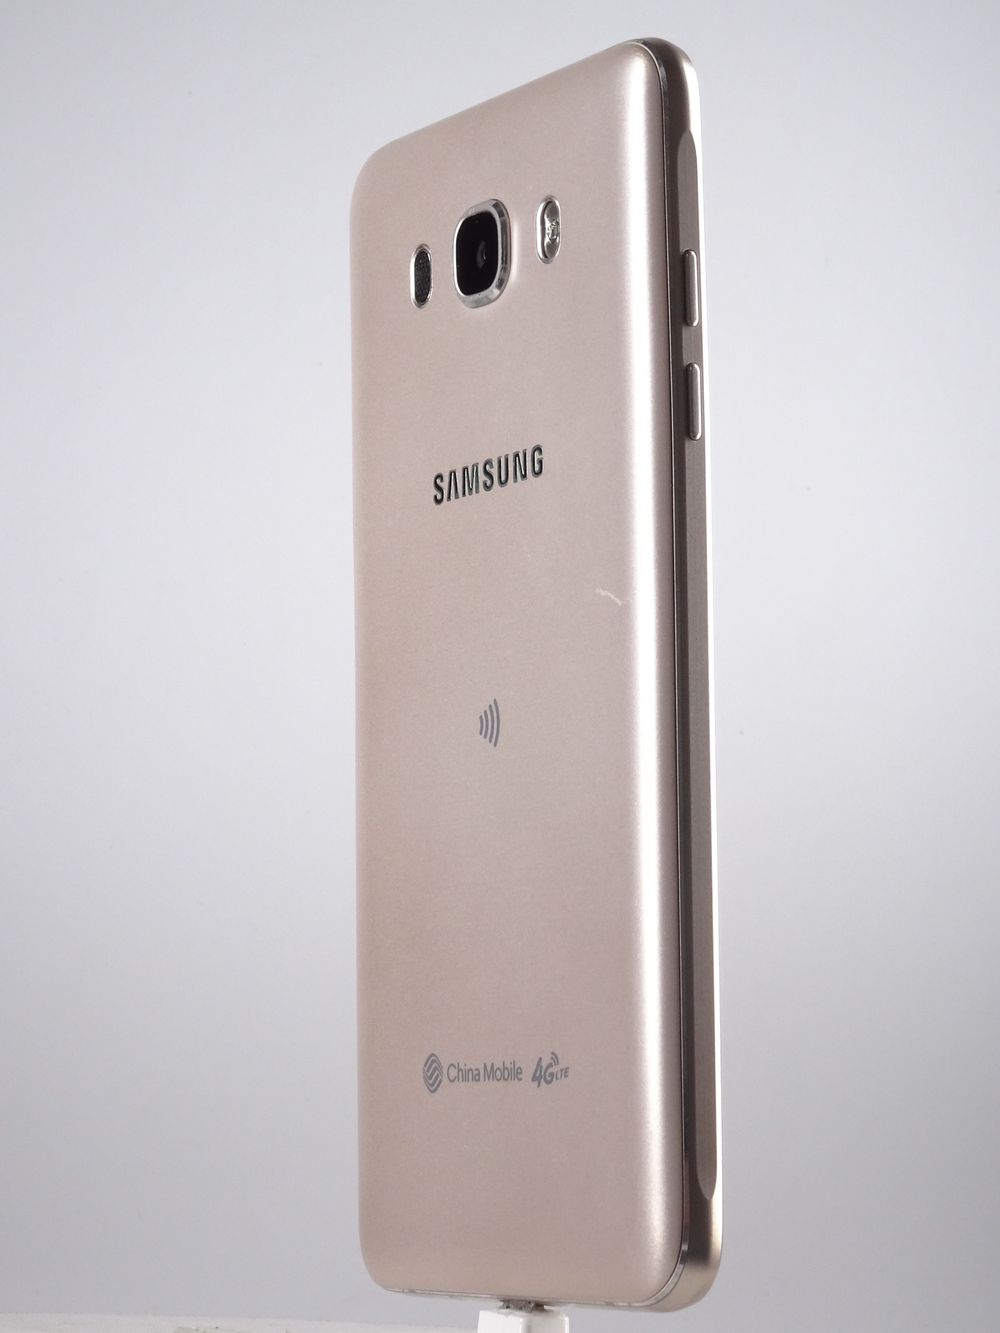 Мобилен телефон Samsung, Galaxy J7 (2016) Dual Sim, 16 GB, Gold,  Като нов